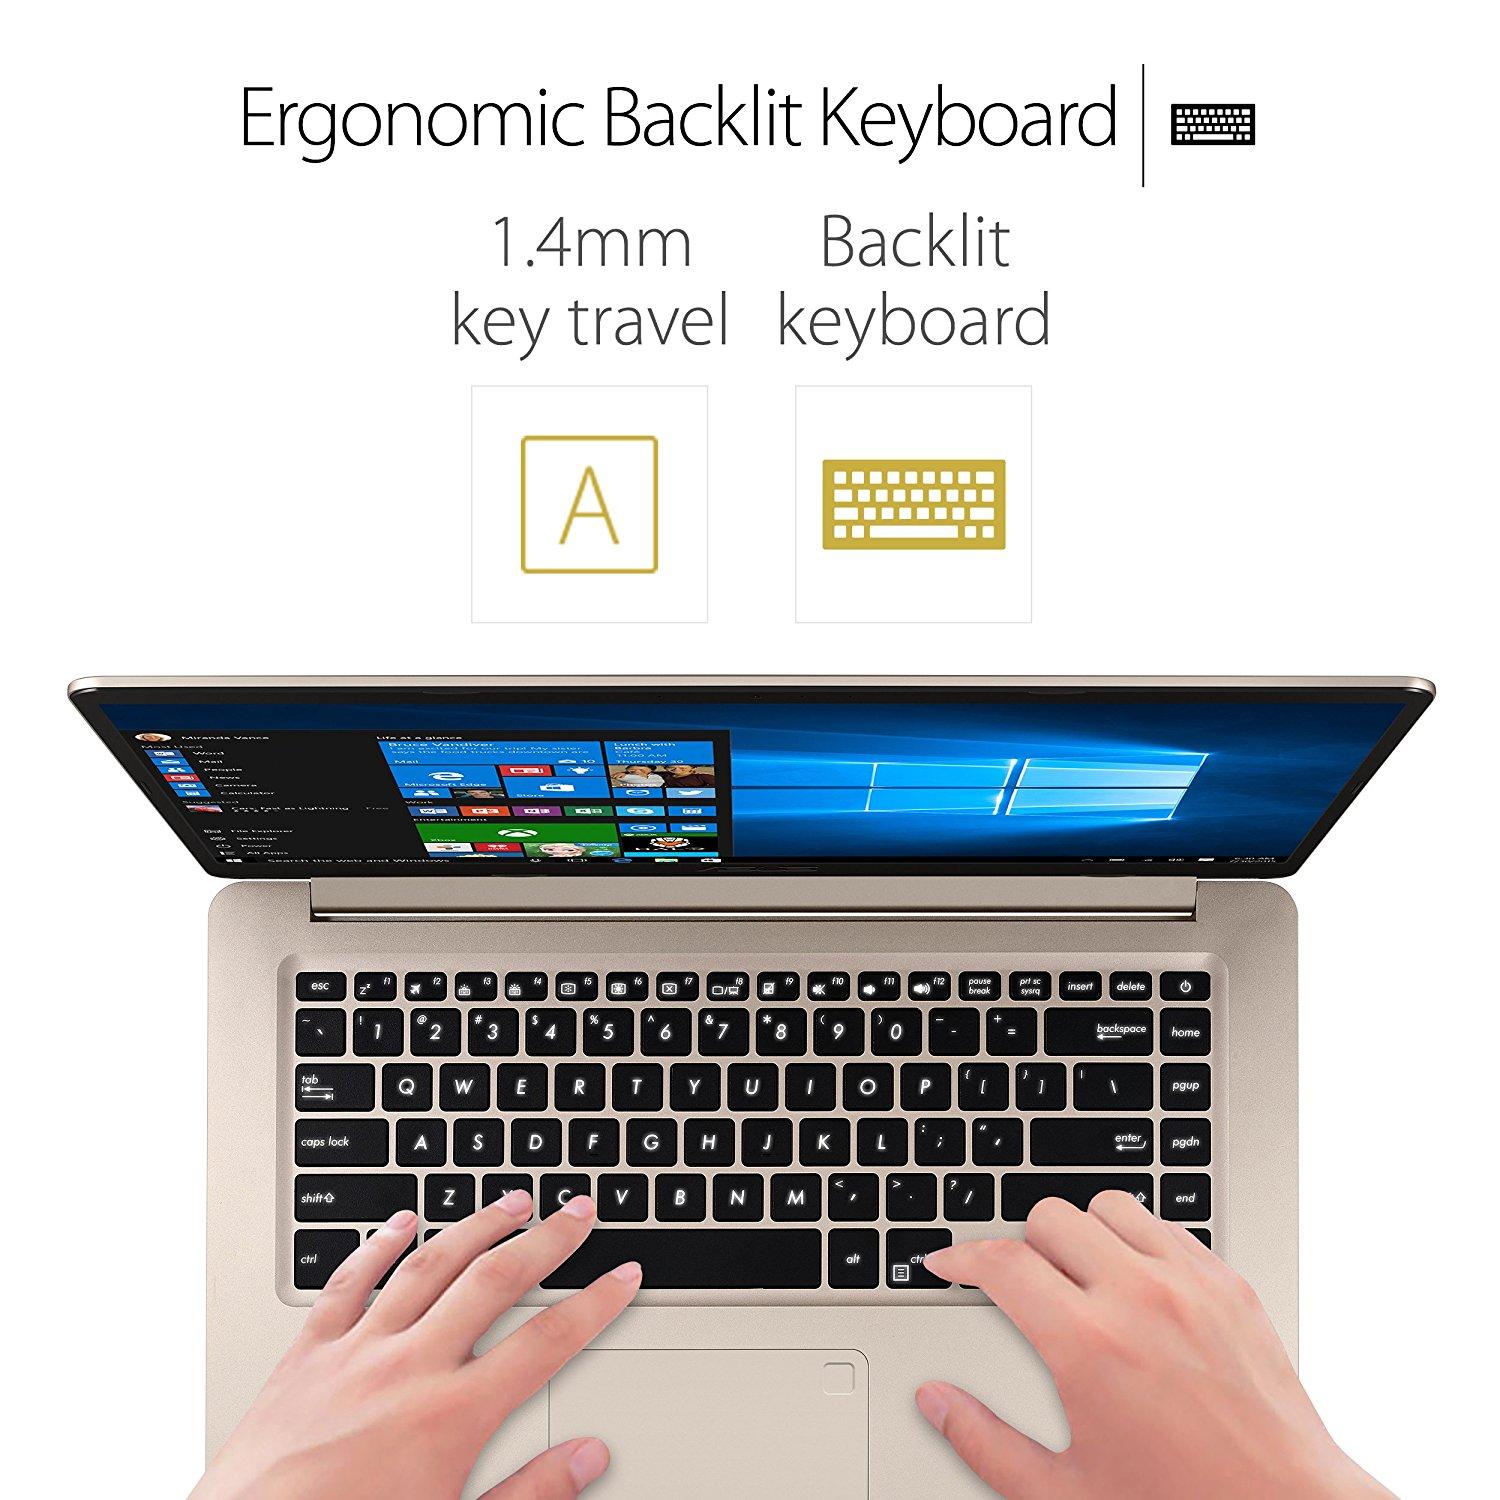 asus gaming laptop backlit keyboard settings